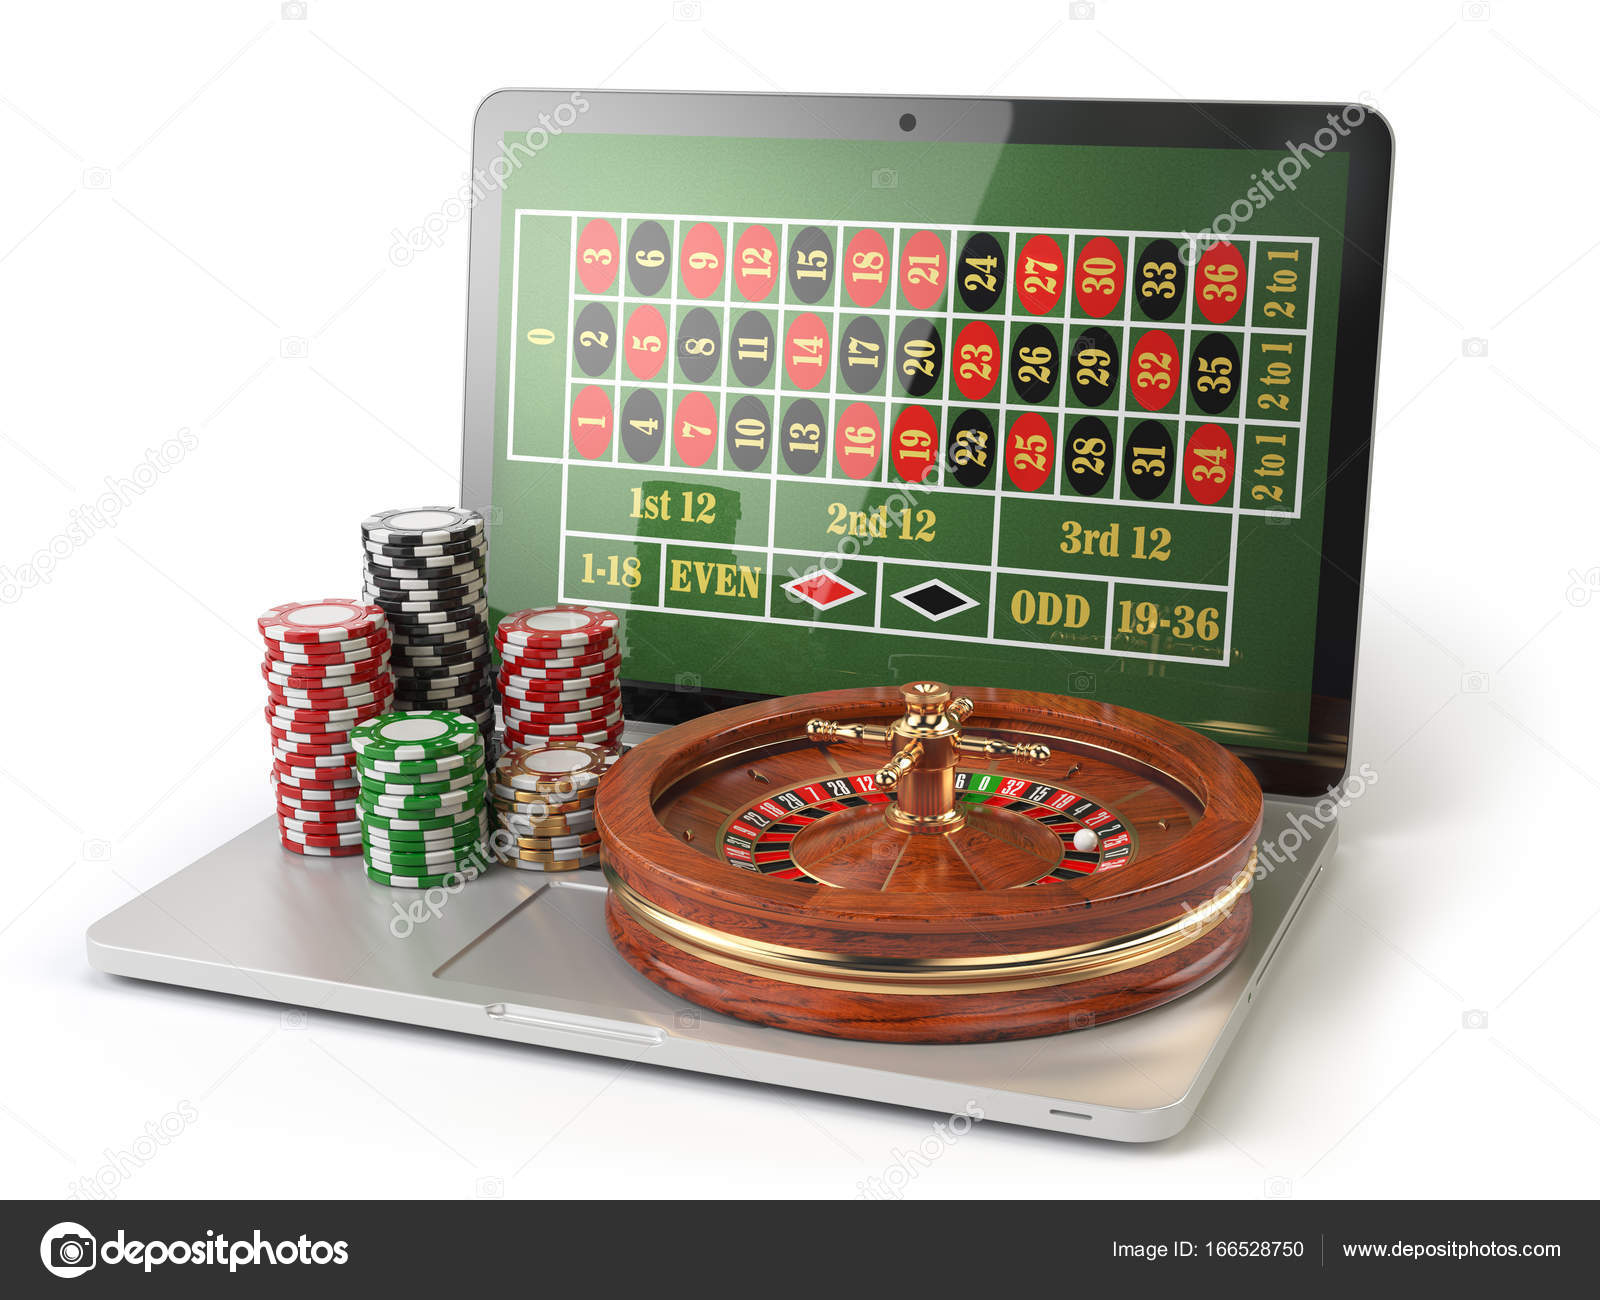 jocuri de noroc cu bani virtuali